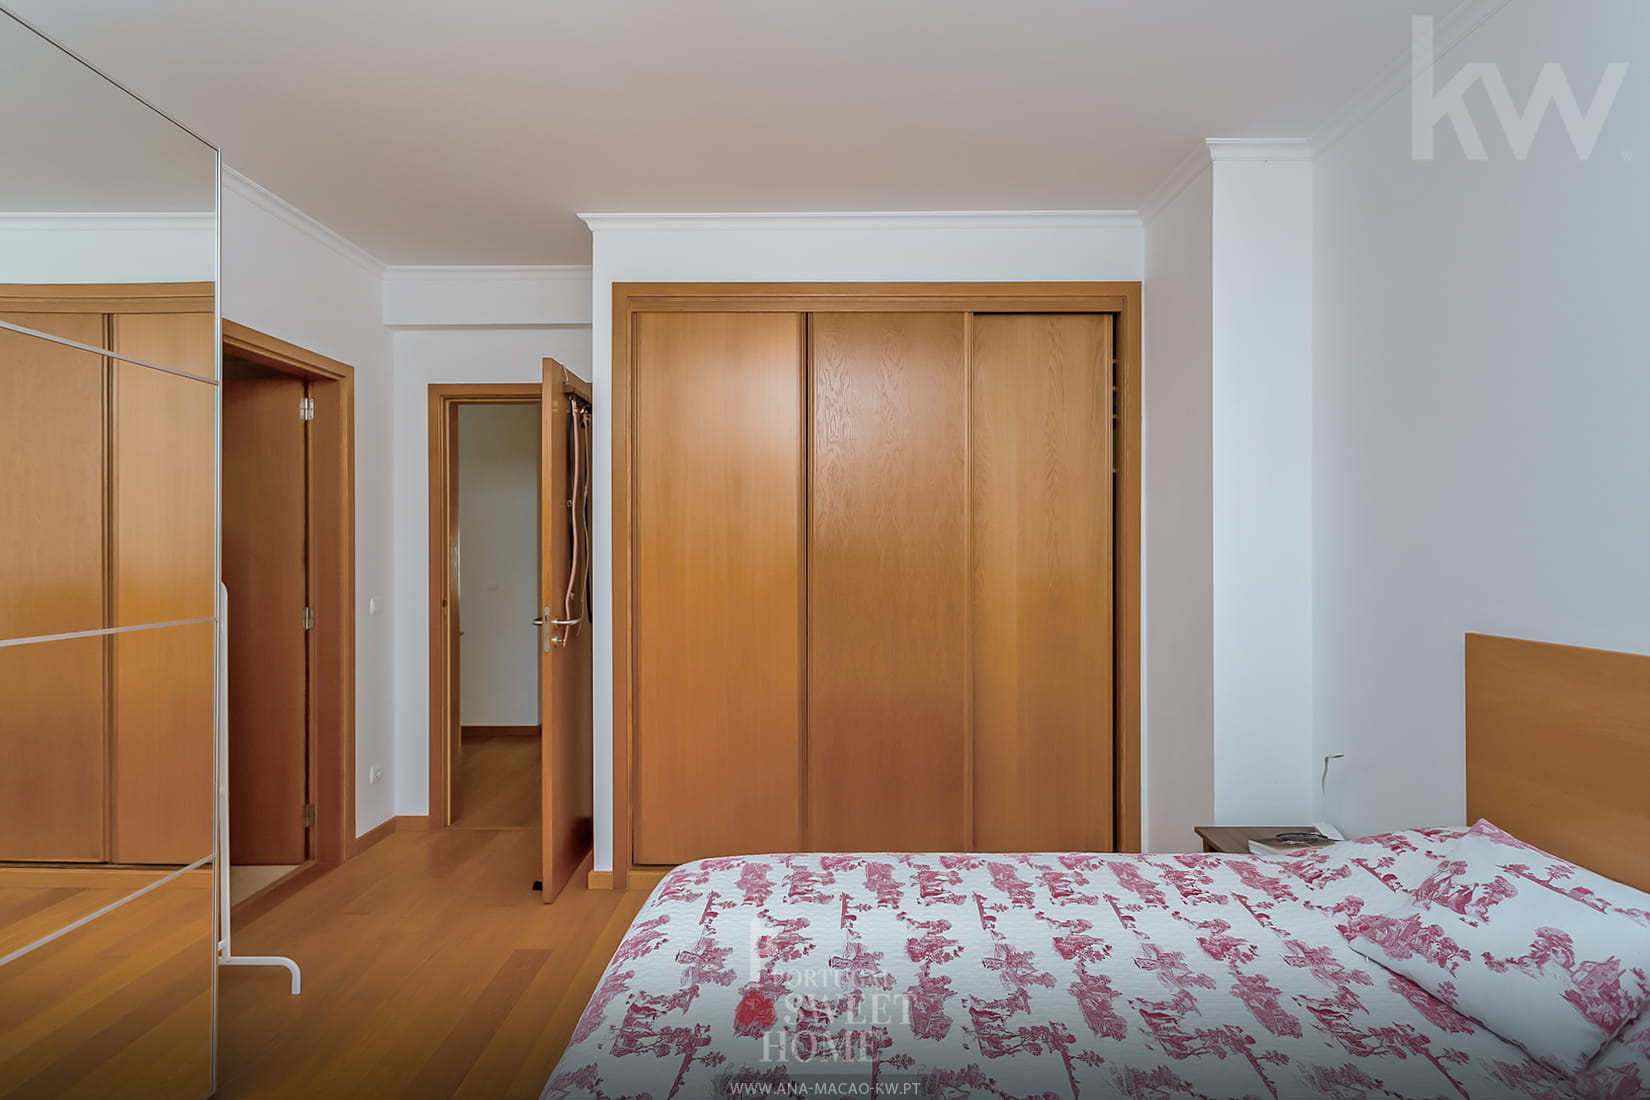 1 Suite (13,4 m²) avec WC (5,33 m²)